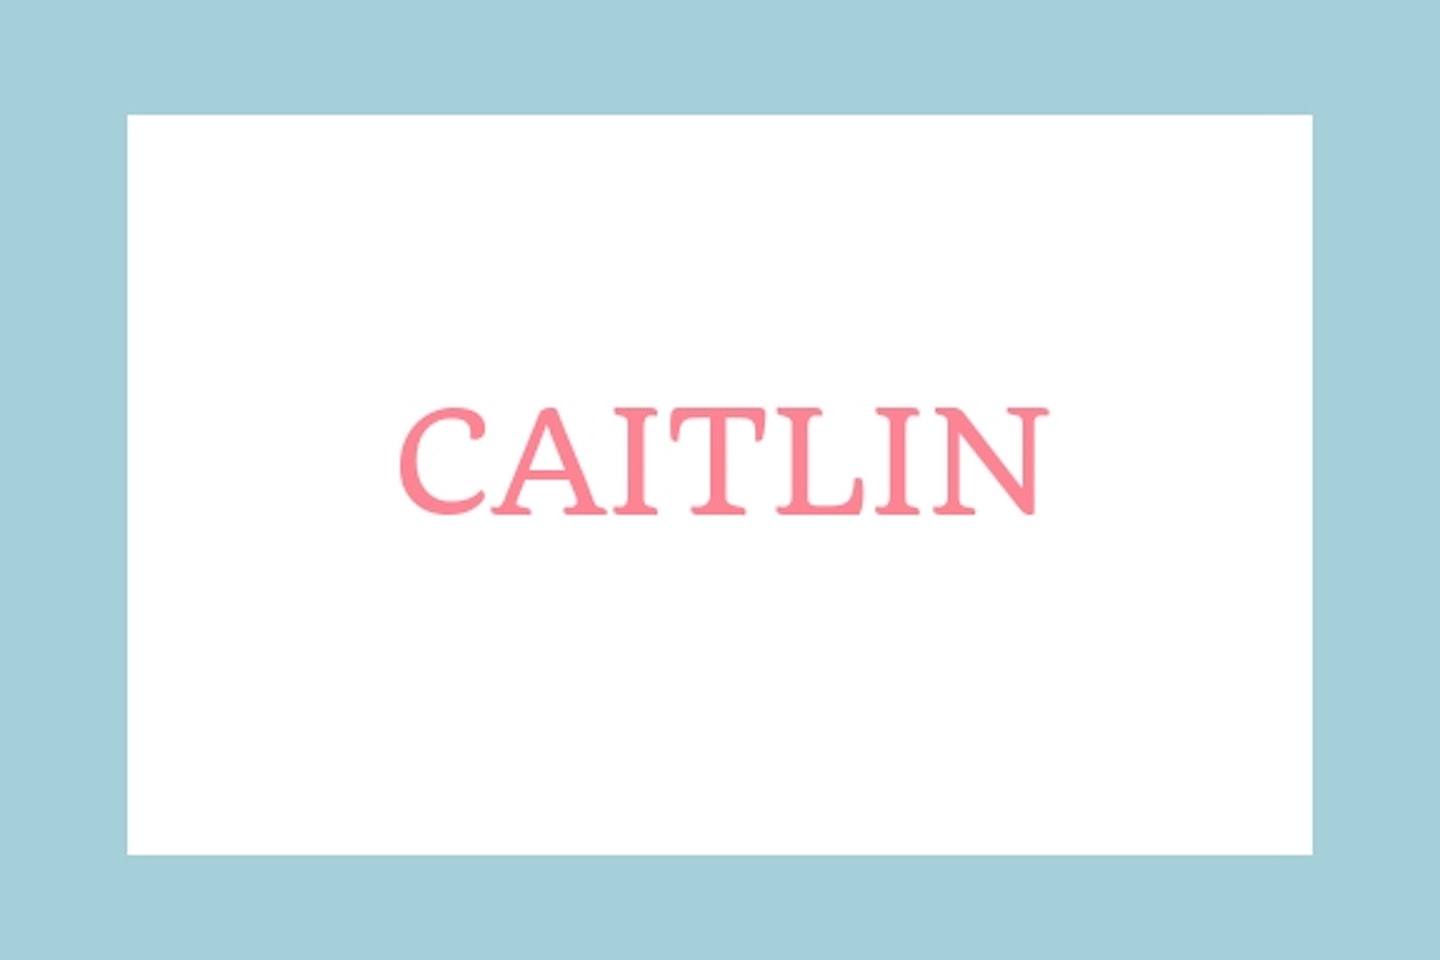 Caitlin